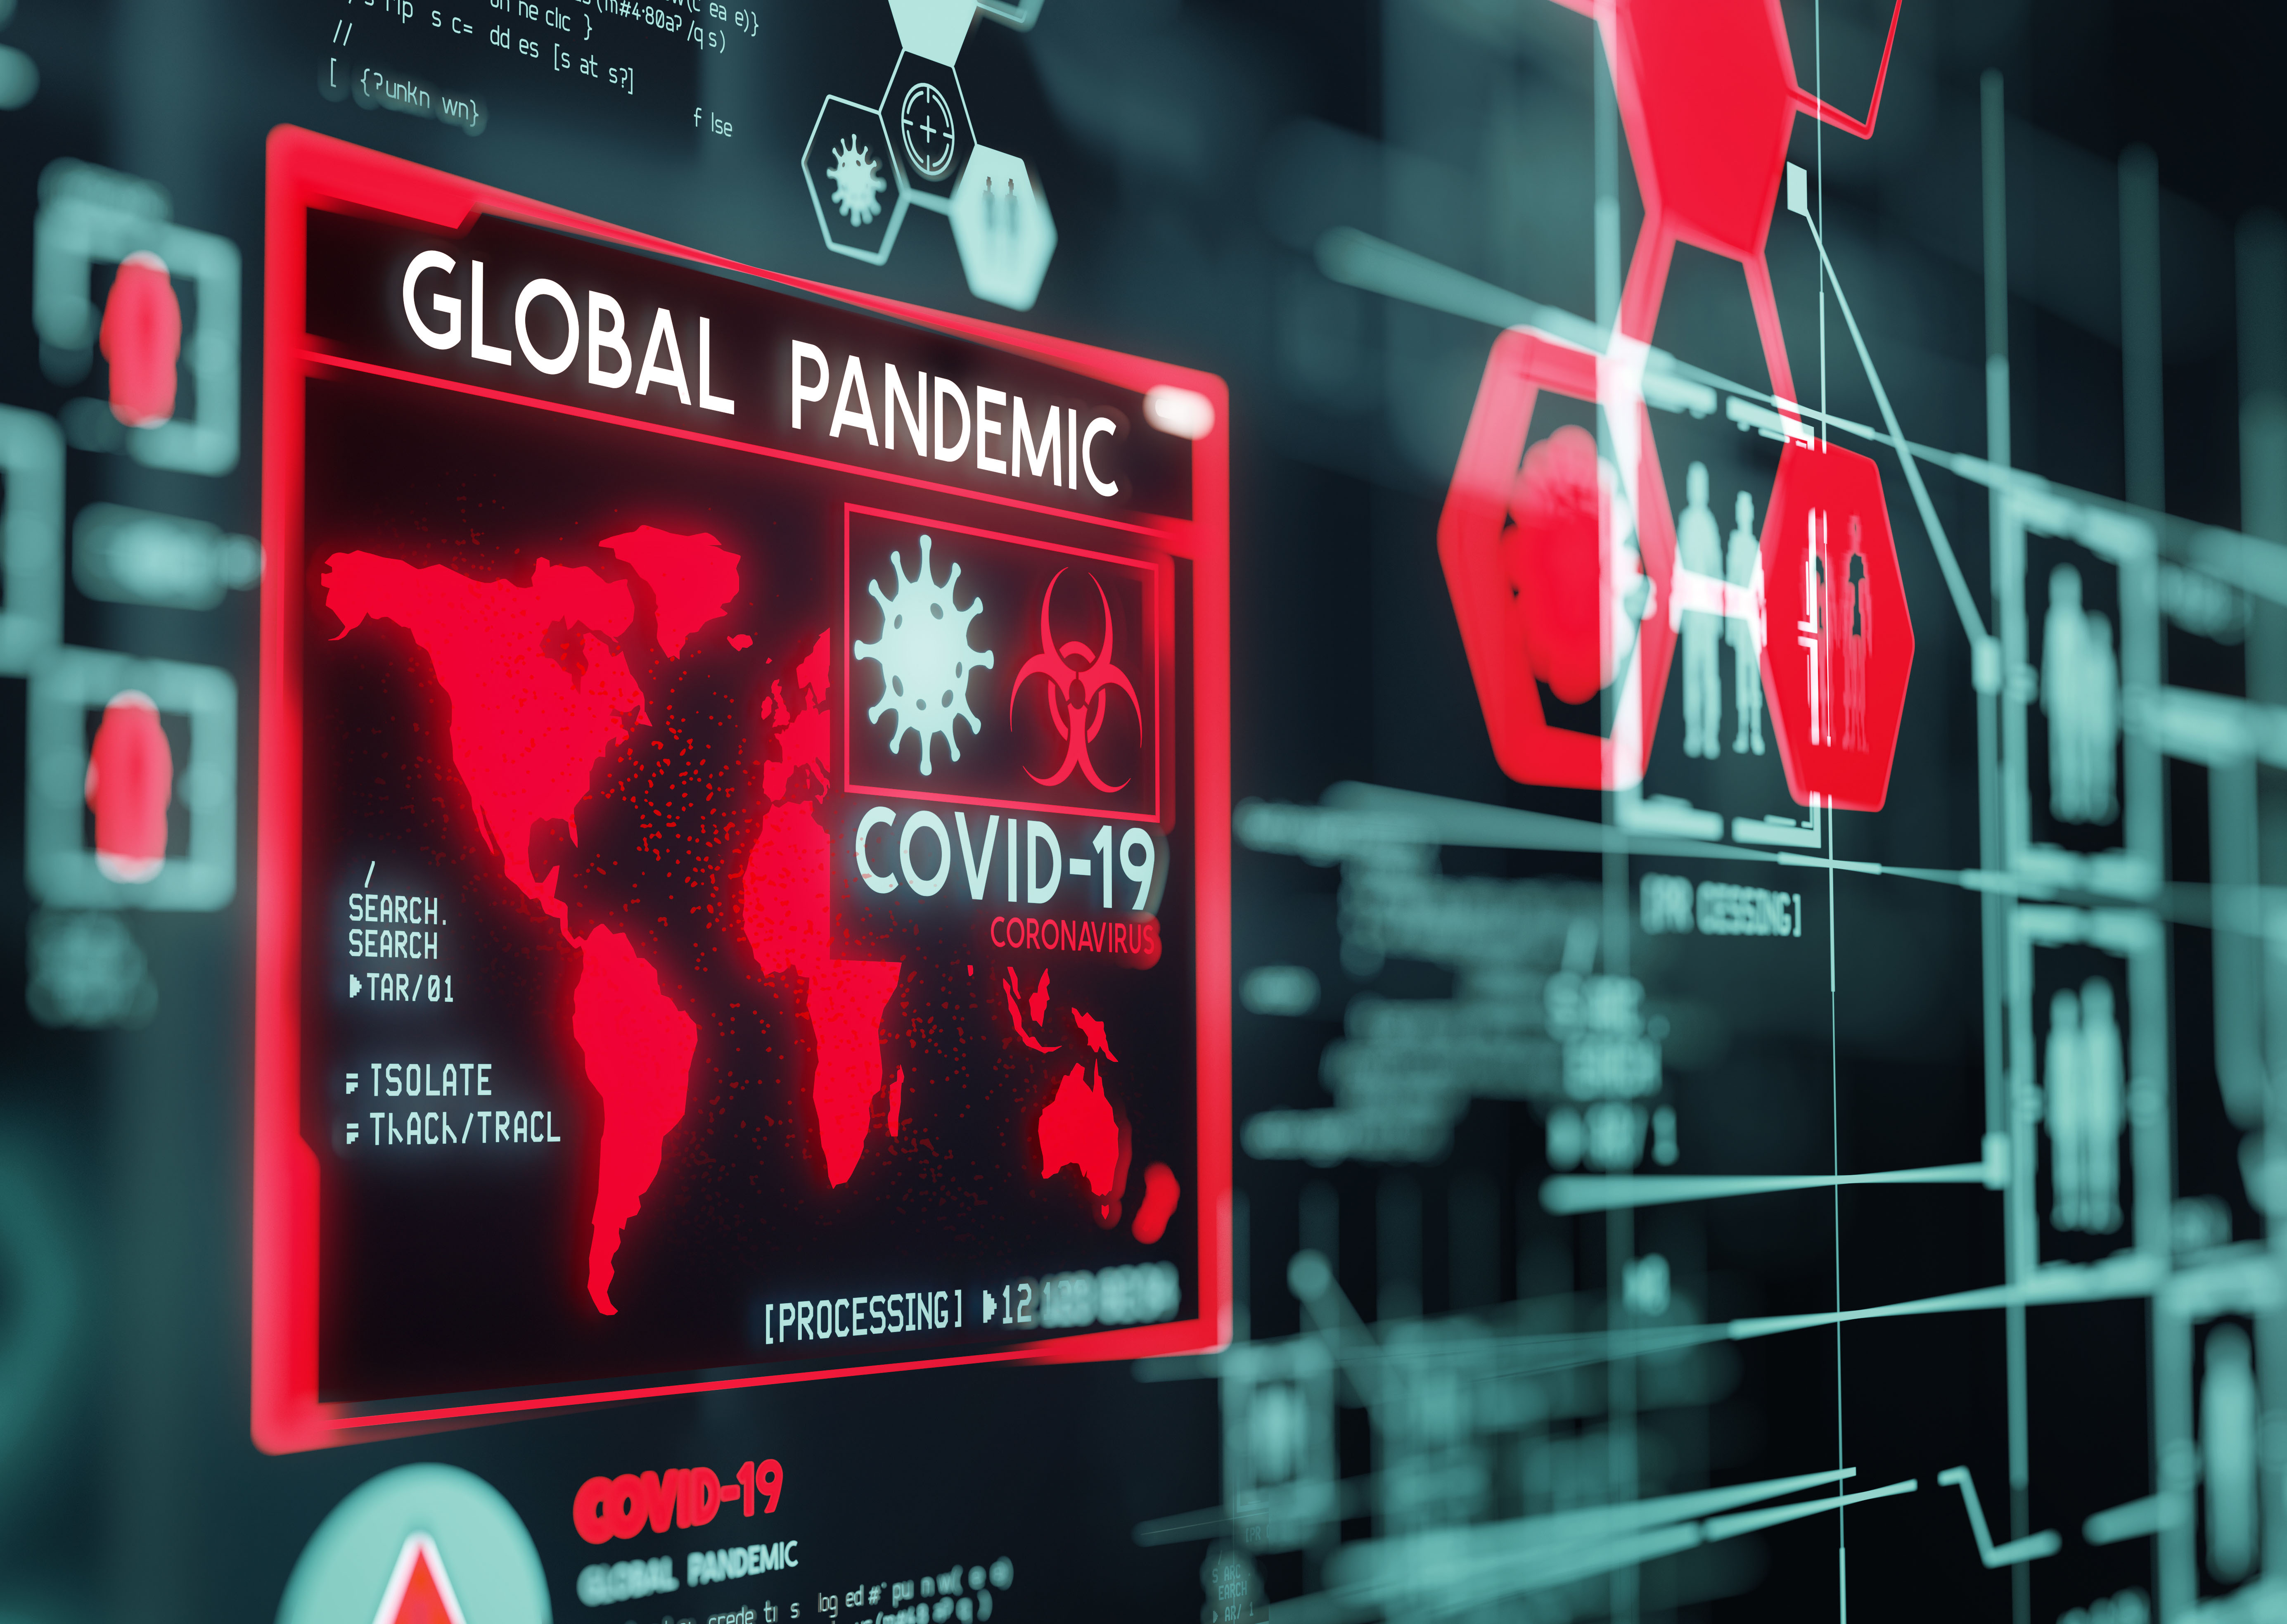 Las lecciones sobre seguridad que nos ha enseñado la pandemia